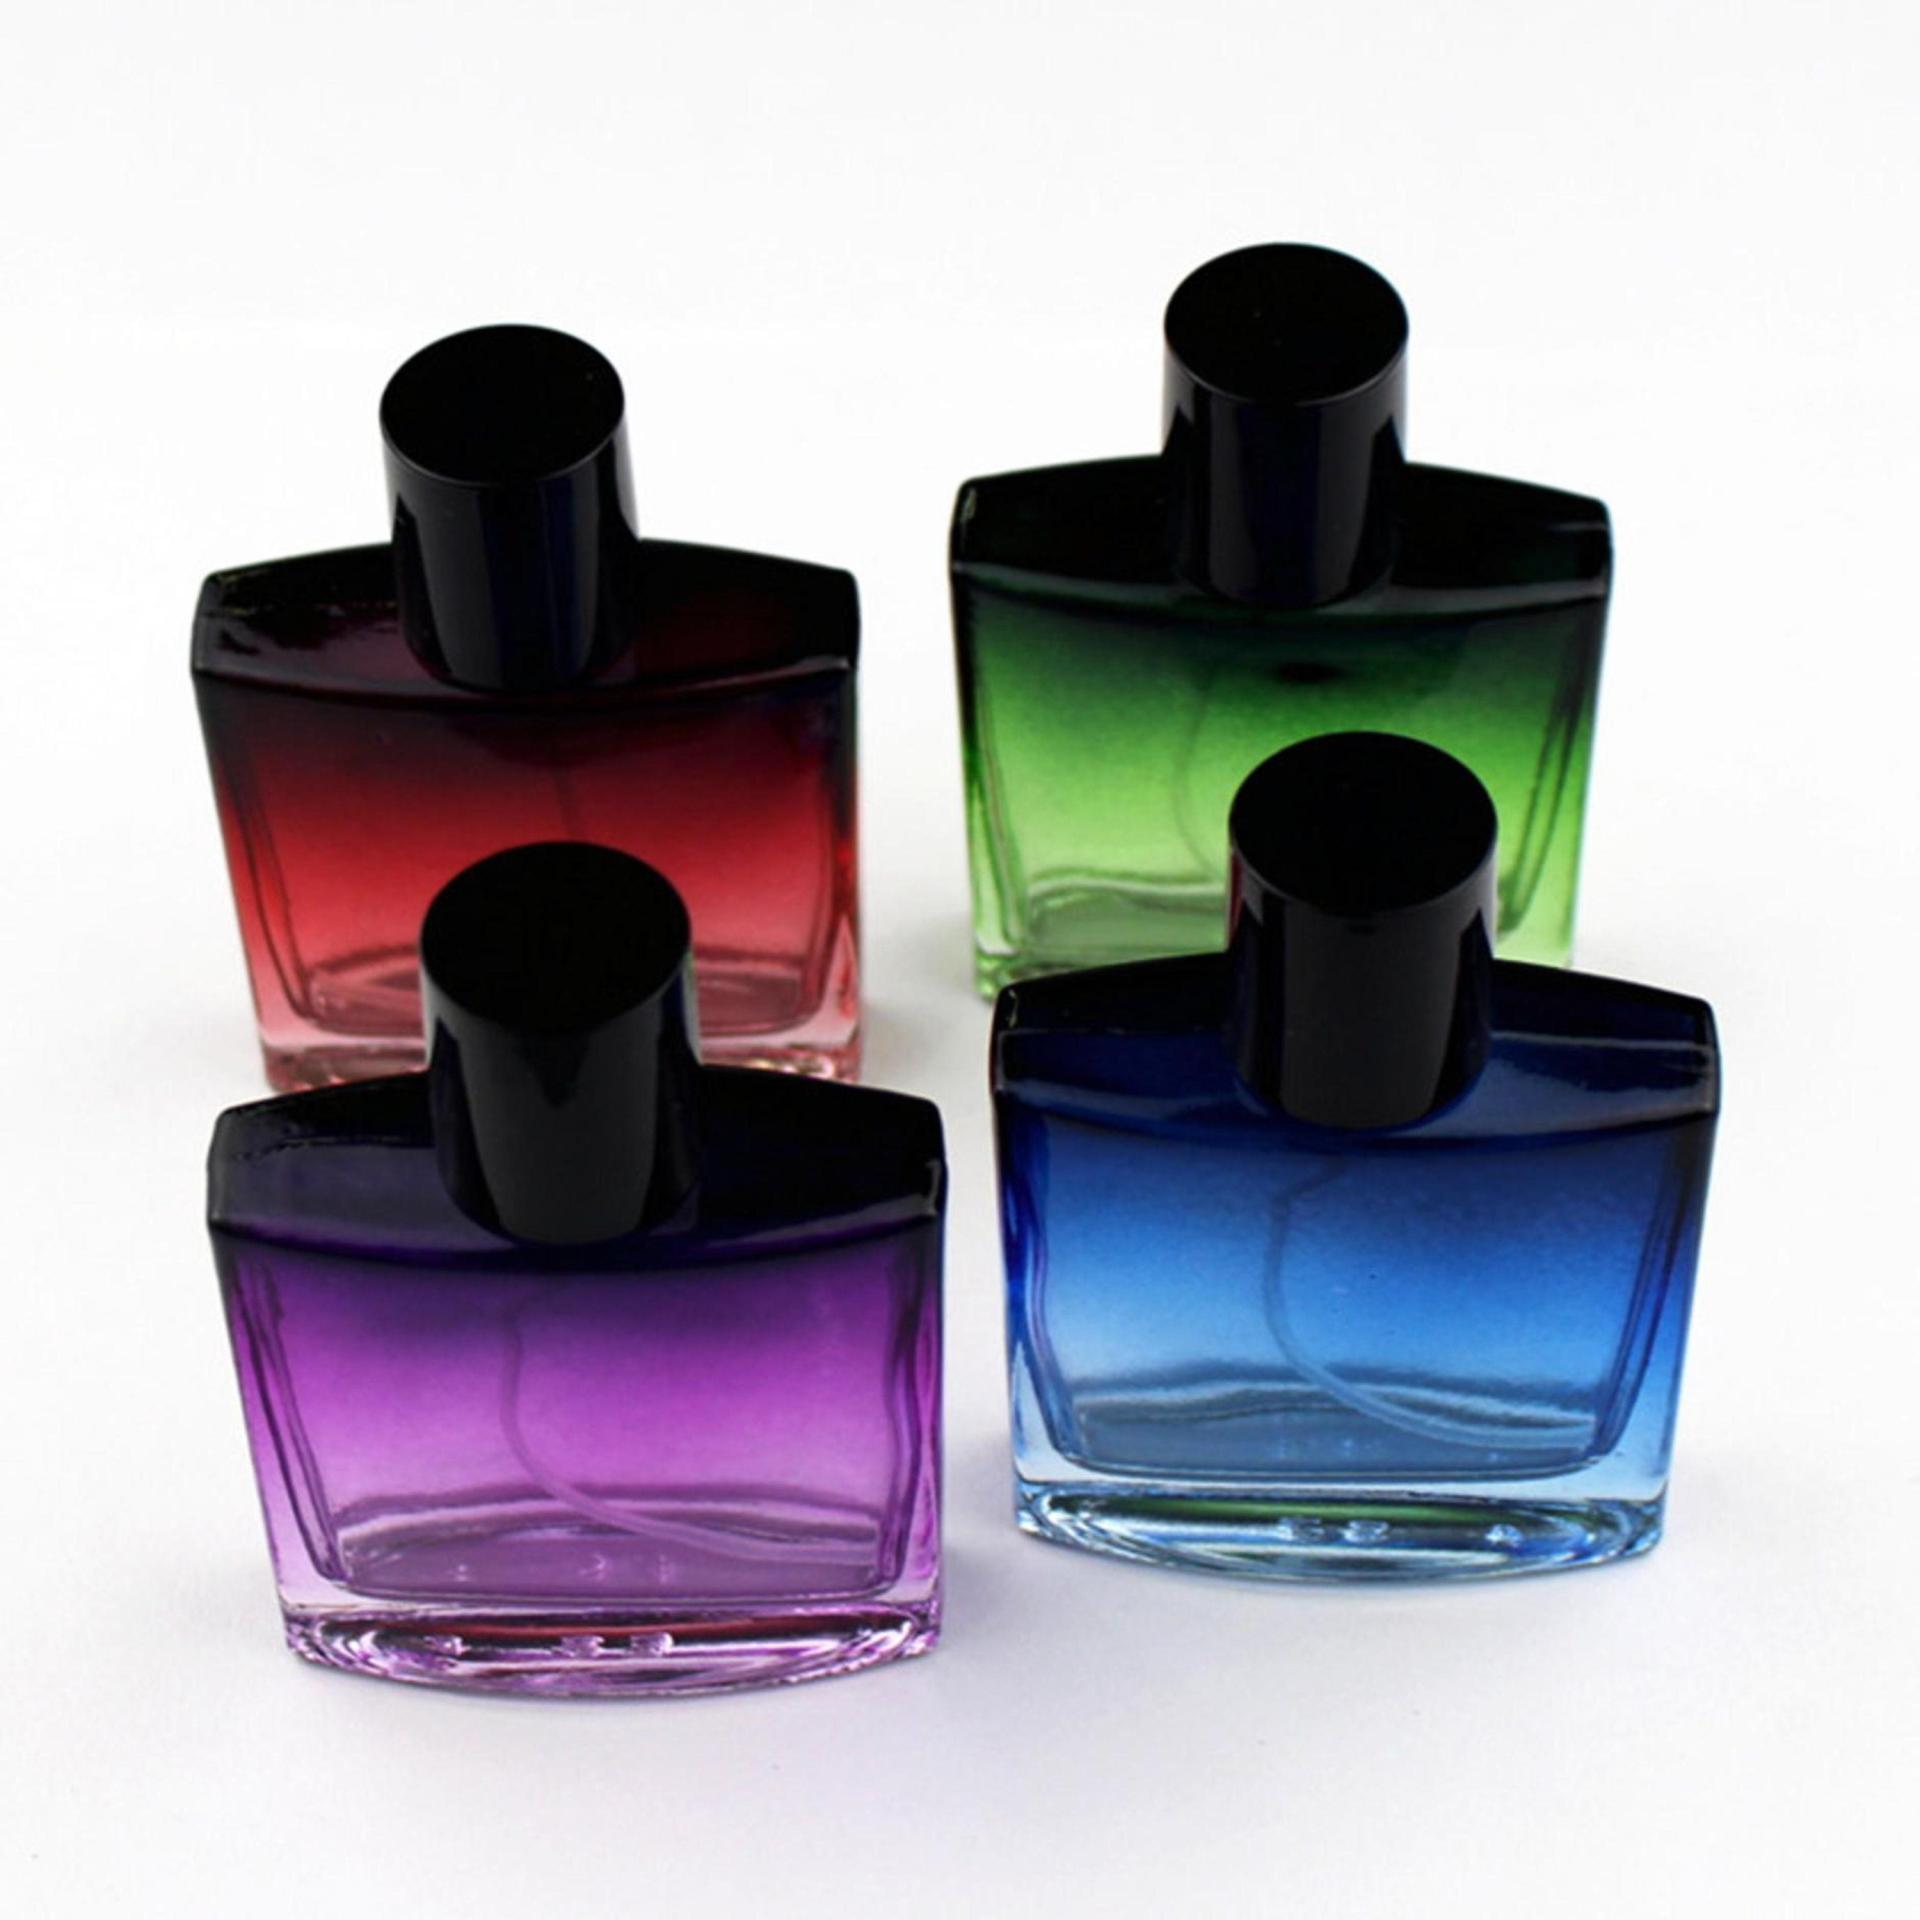 Perfume Bottles, Spray Mister, Multiple Colors, Square Bottle